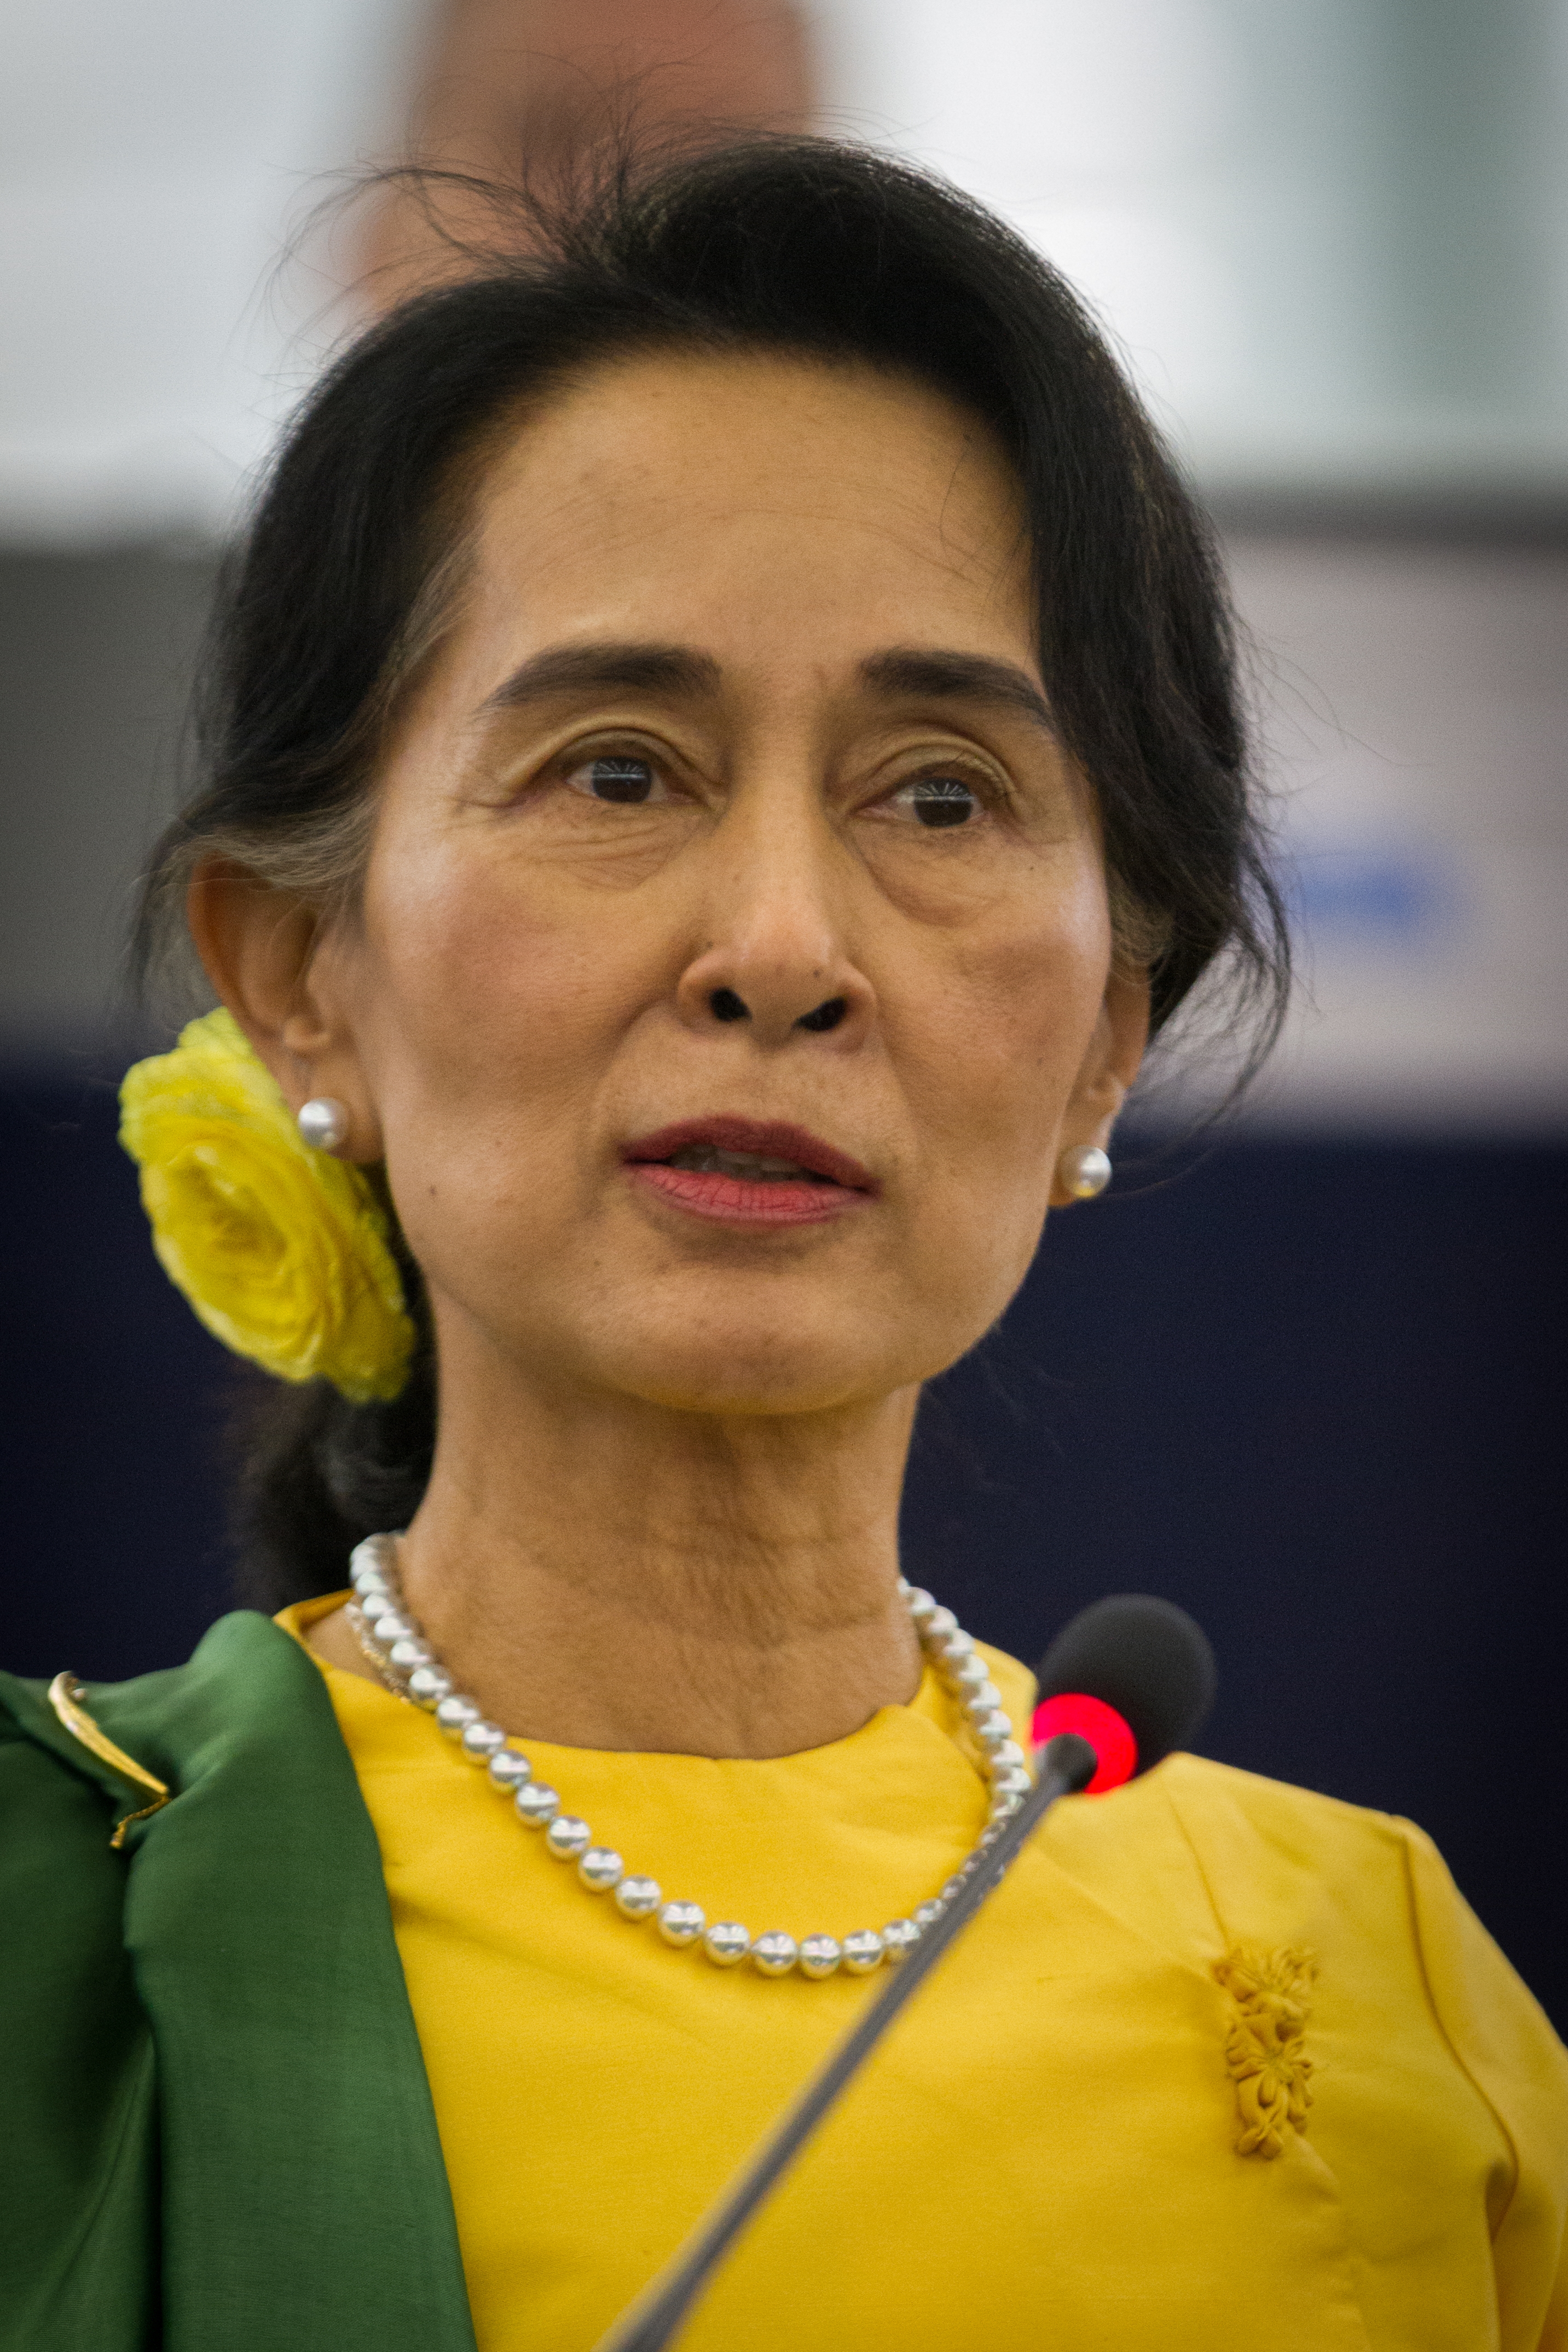 auteur Aung San Suu Kyi de la citation Je ne pense pas que vous puissiez travailler sur les sentiments en politique, en dehors de toute autre chose, le changement politique peut venir de façon très inattendue, parfois du jour au lendemain lorsque vous vous y attendez le moins.